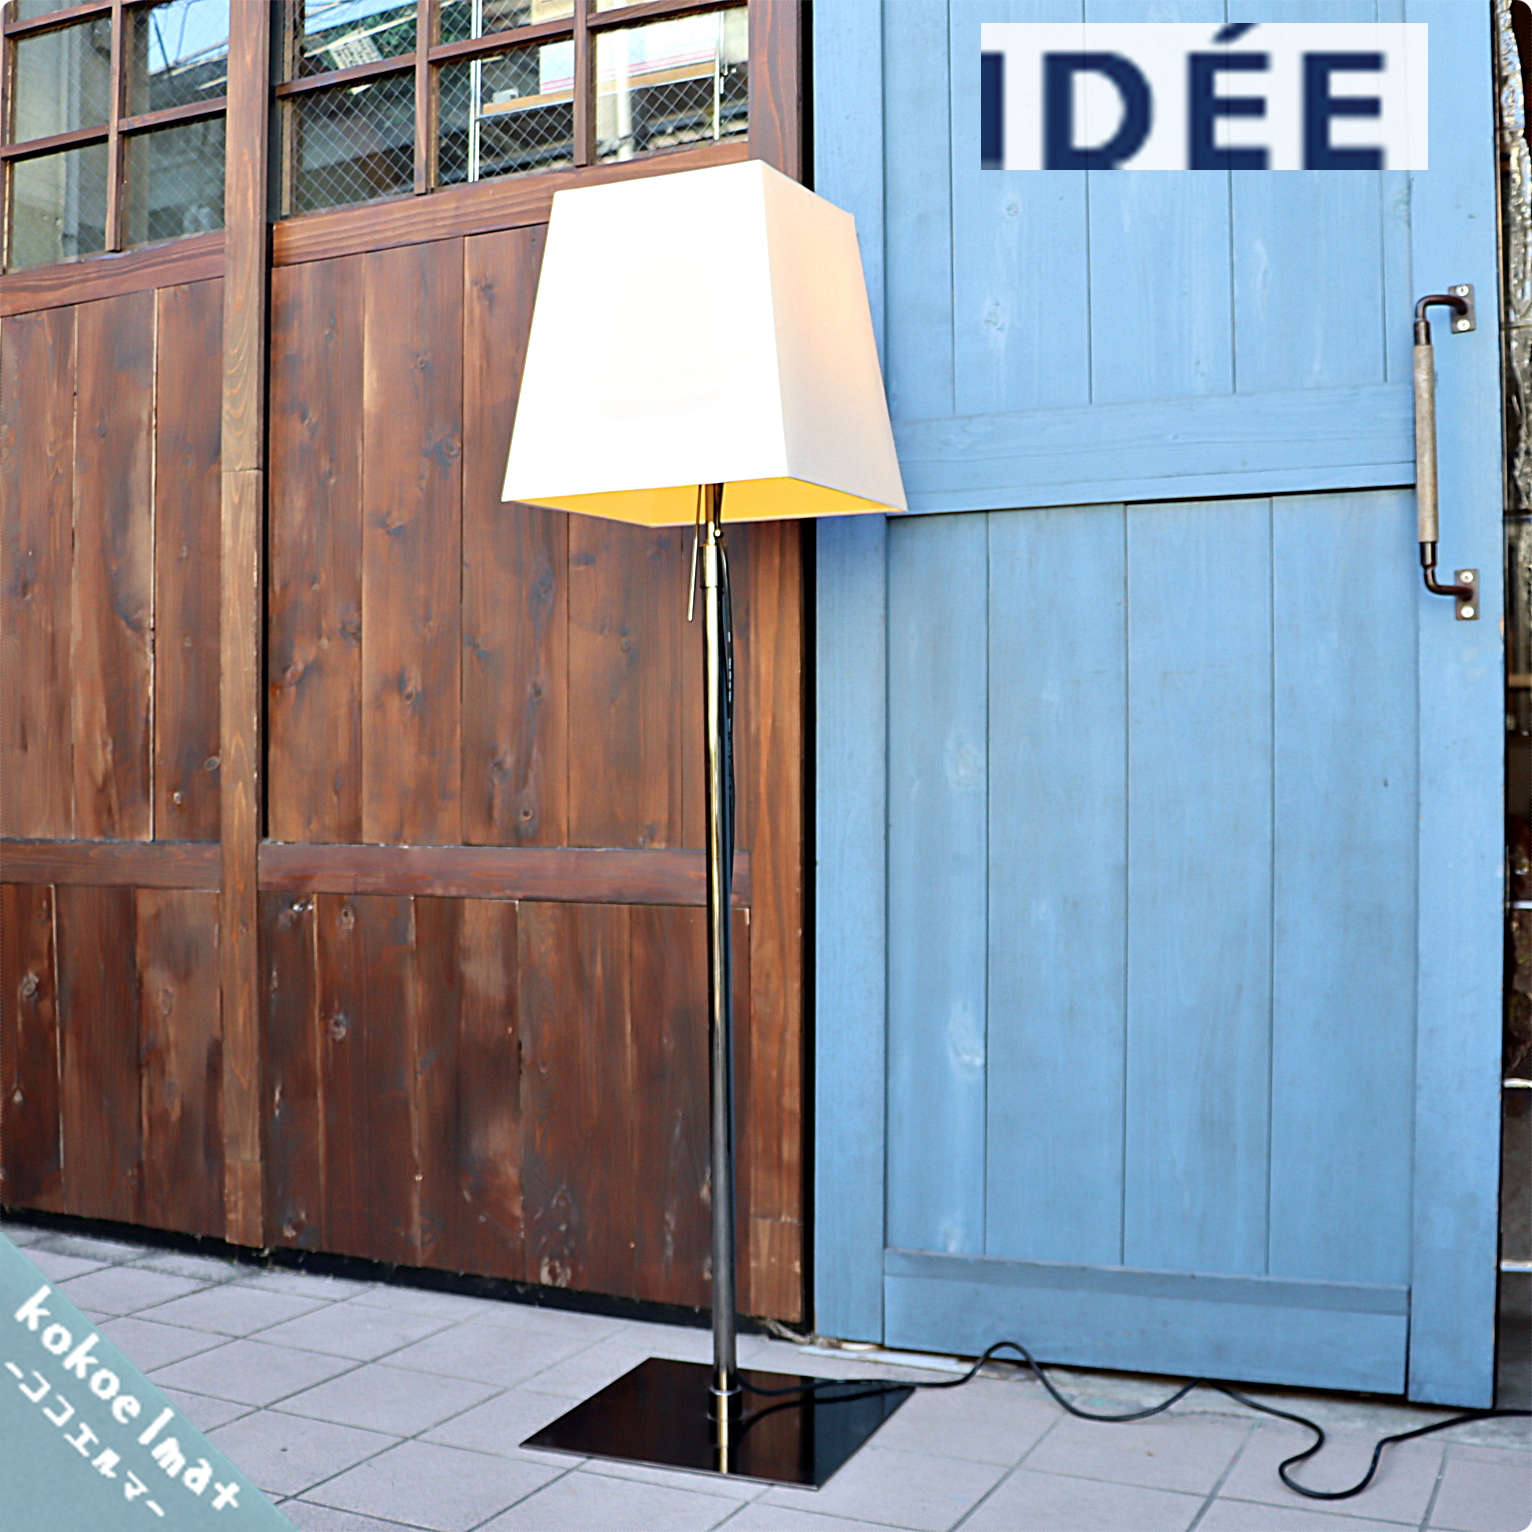 IDEE(イデー) | 新入荷商品 | kokoelma2020.11